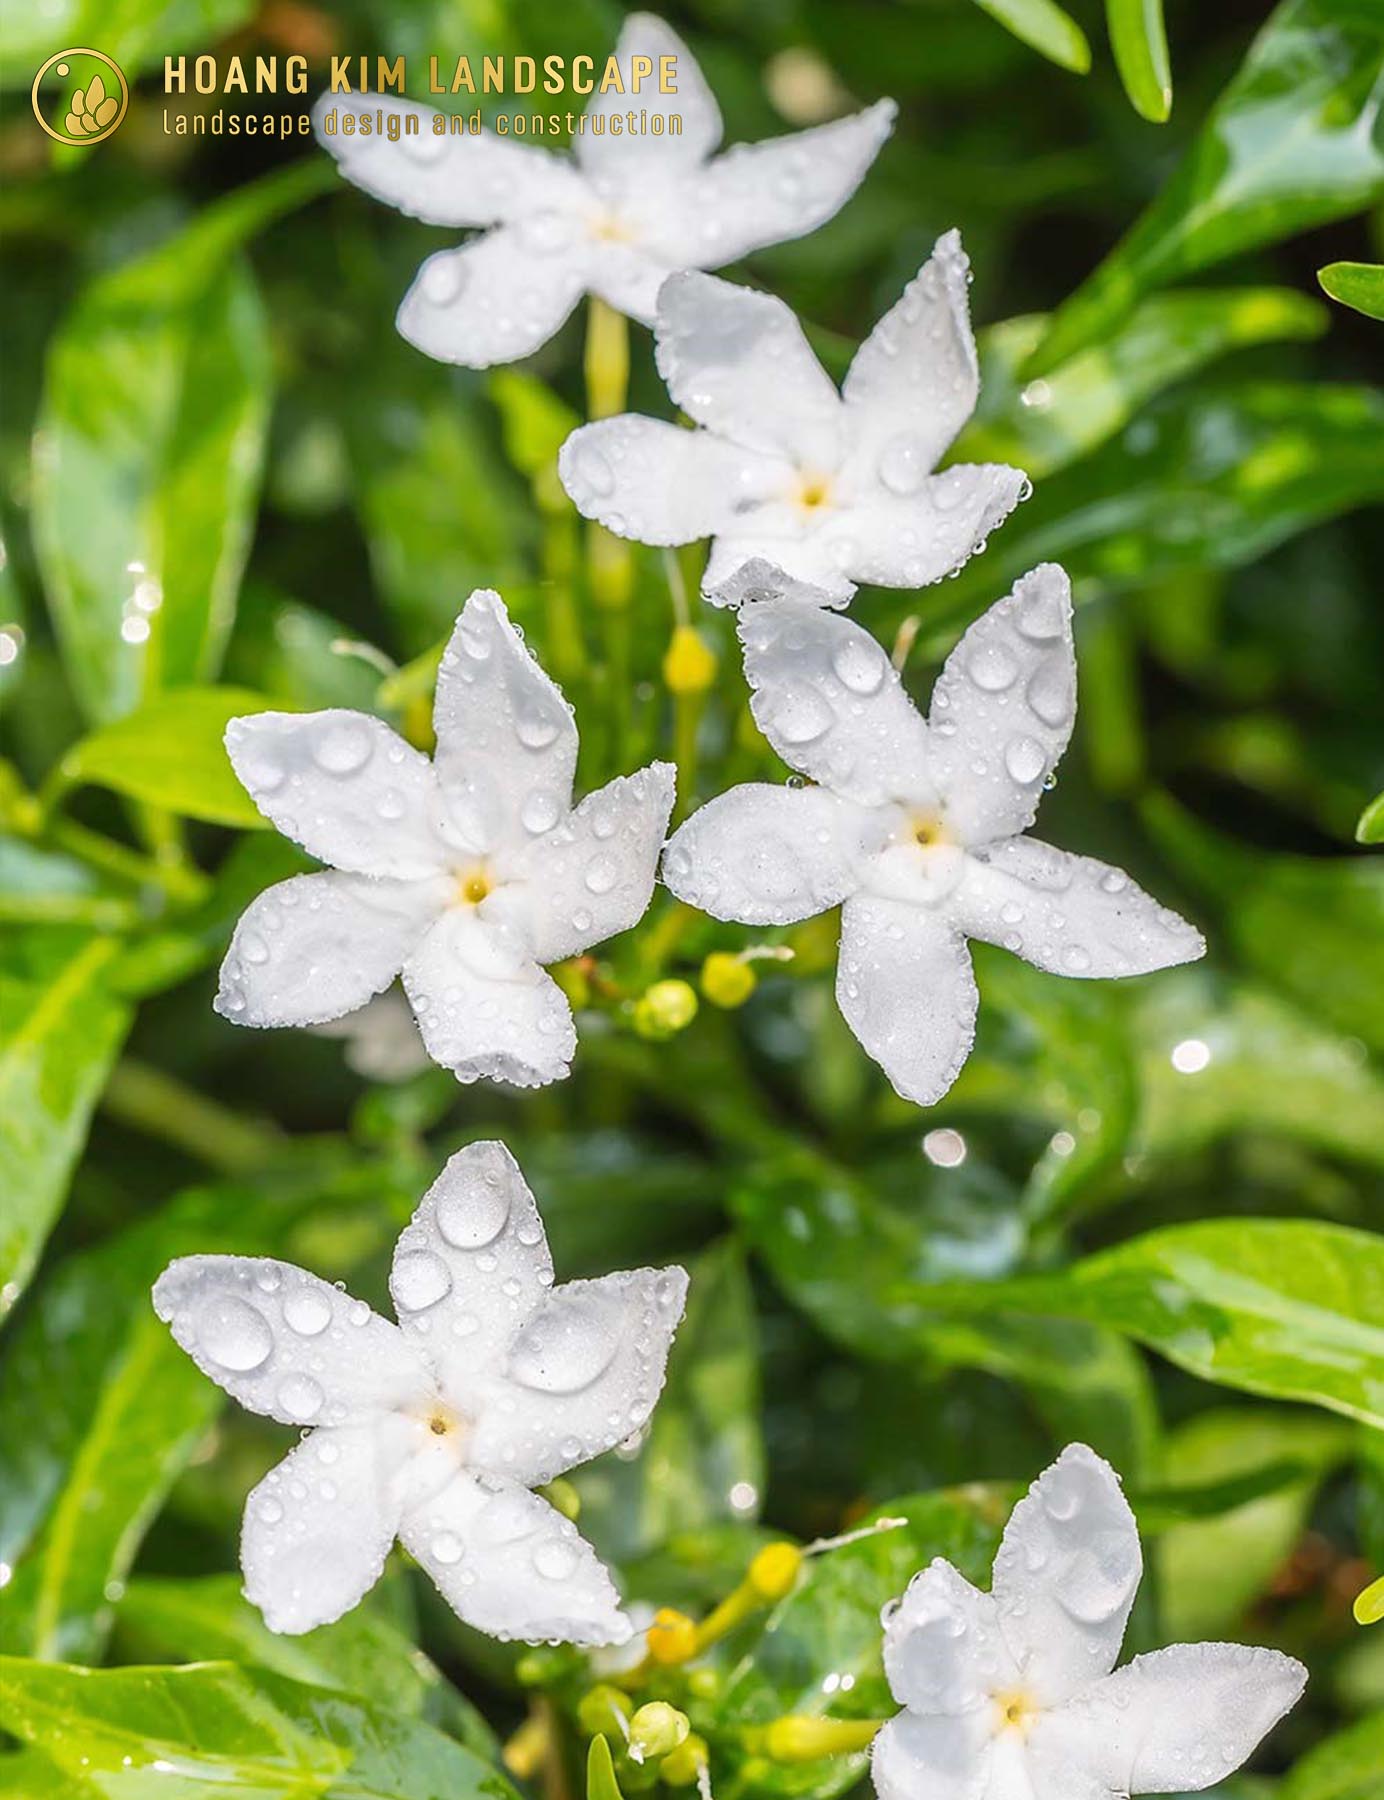 Hoa Mai Vạn Phúc có màu trắng, 5 cánh nở xòe như hình mũi mác và tỏa hương thơm dịu nhẹ